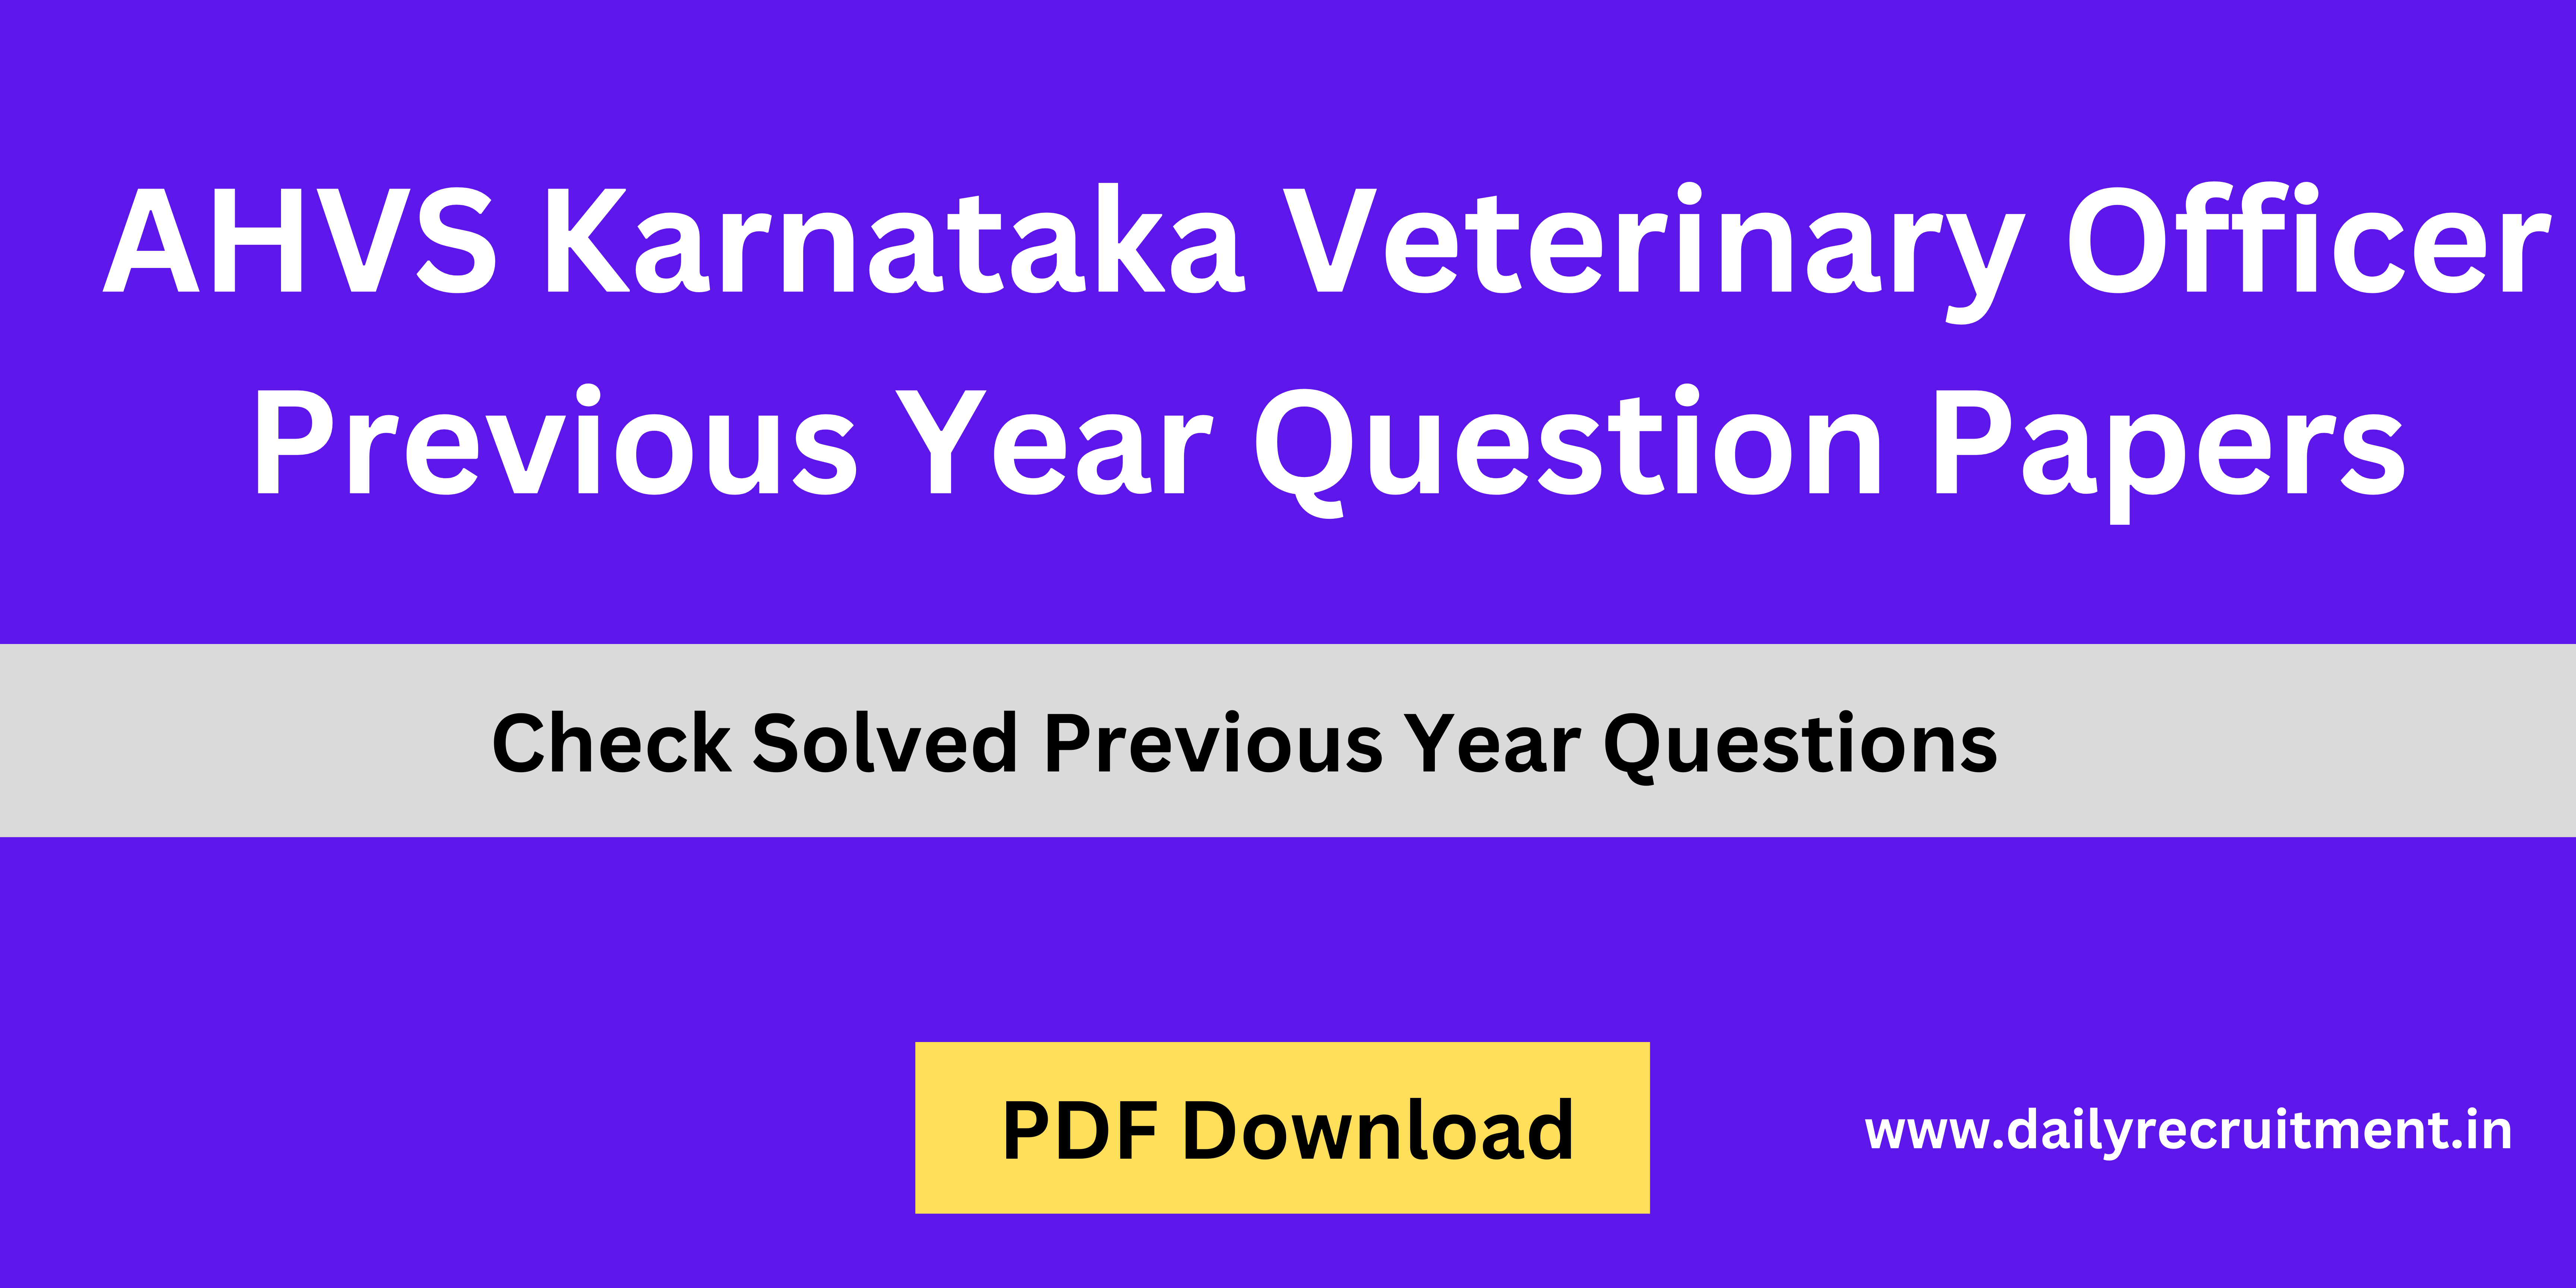 AHVS Karnataka Veterinary Officer Question Papers